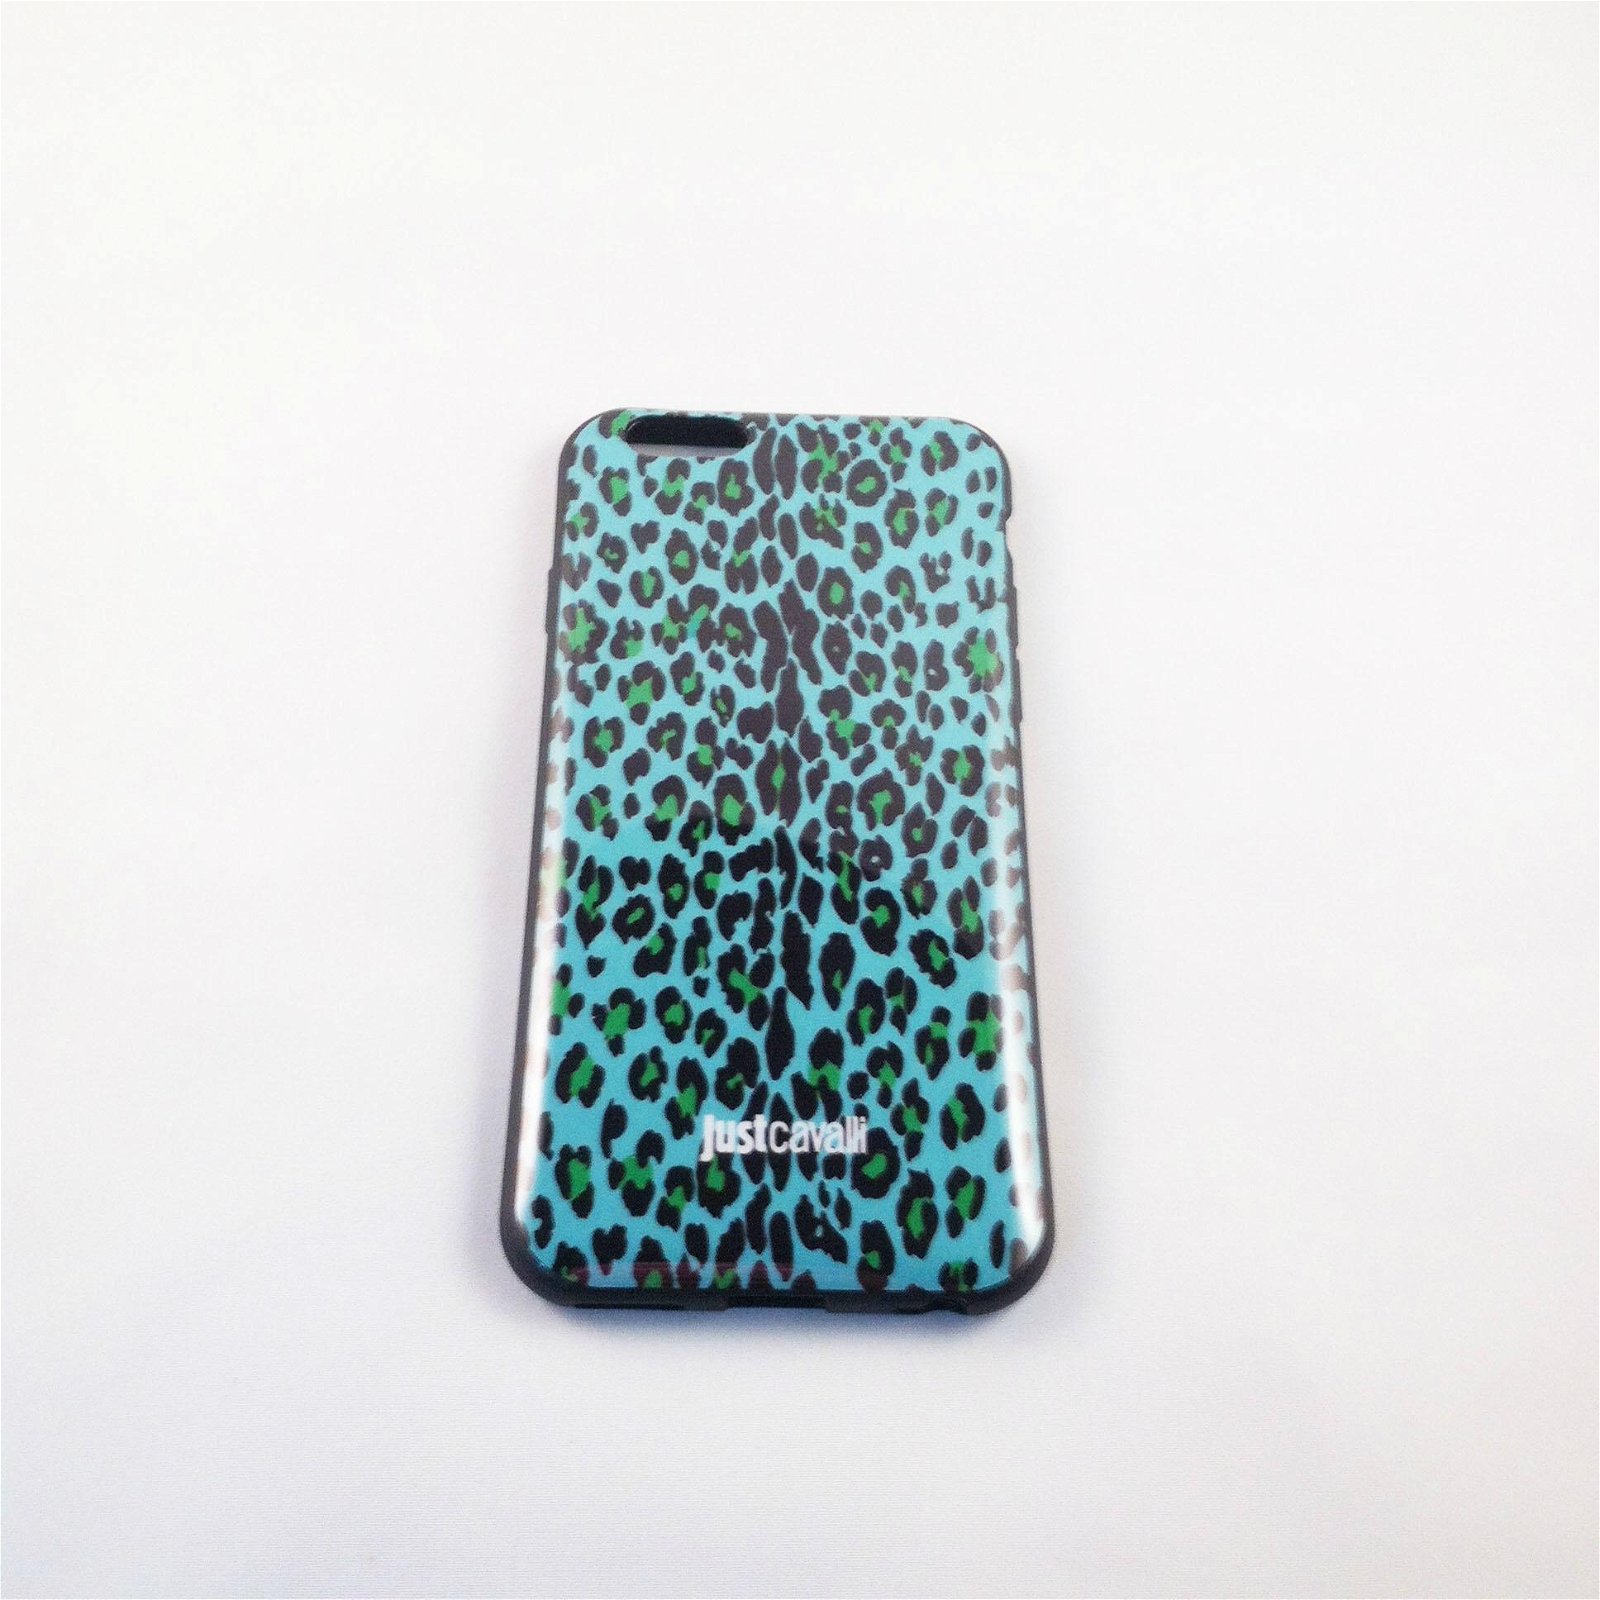 苹果6手机壳 iphone6手机保护套豹纹蛇纹justcavalli卡沃利 环保 5